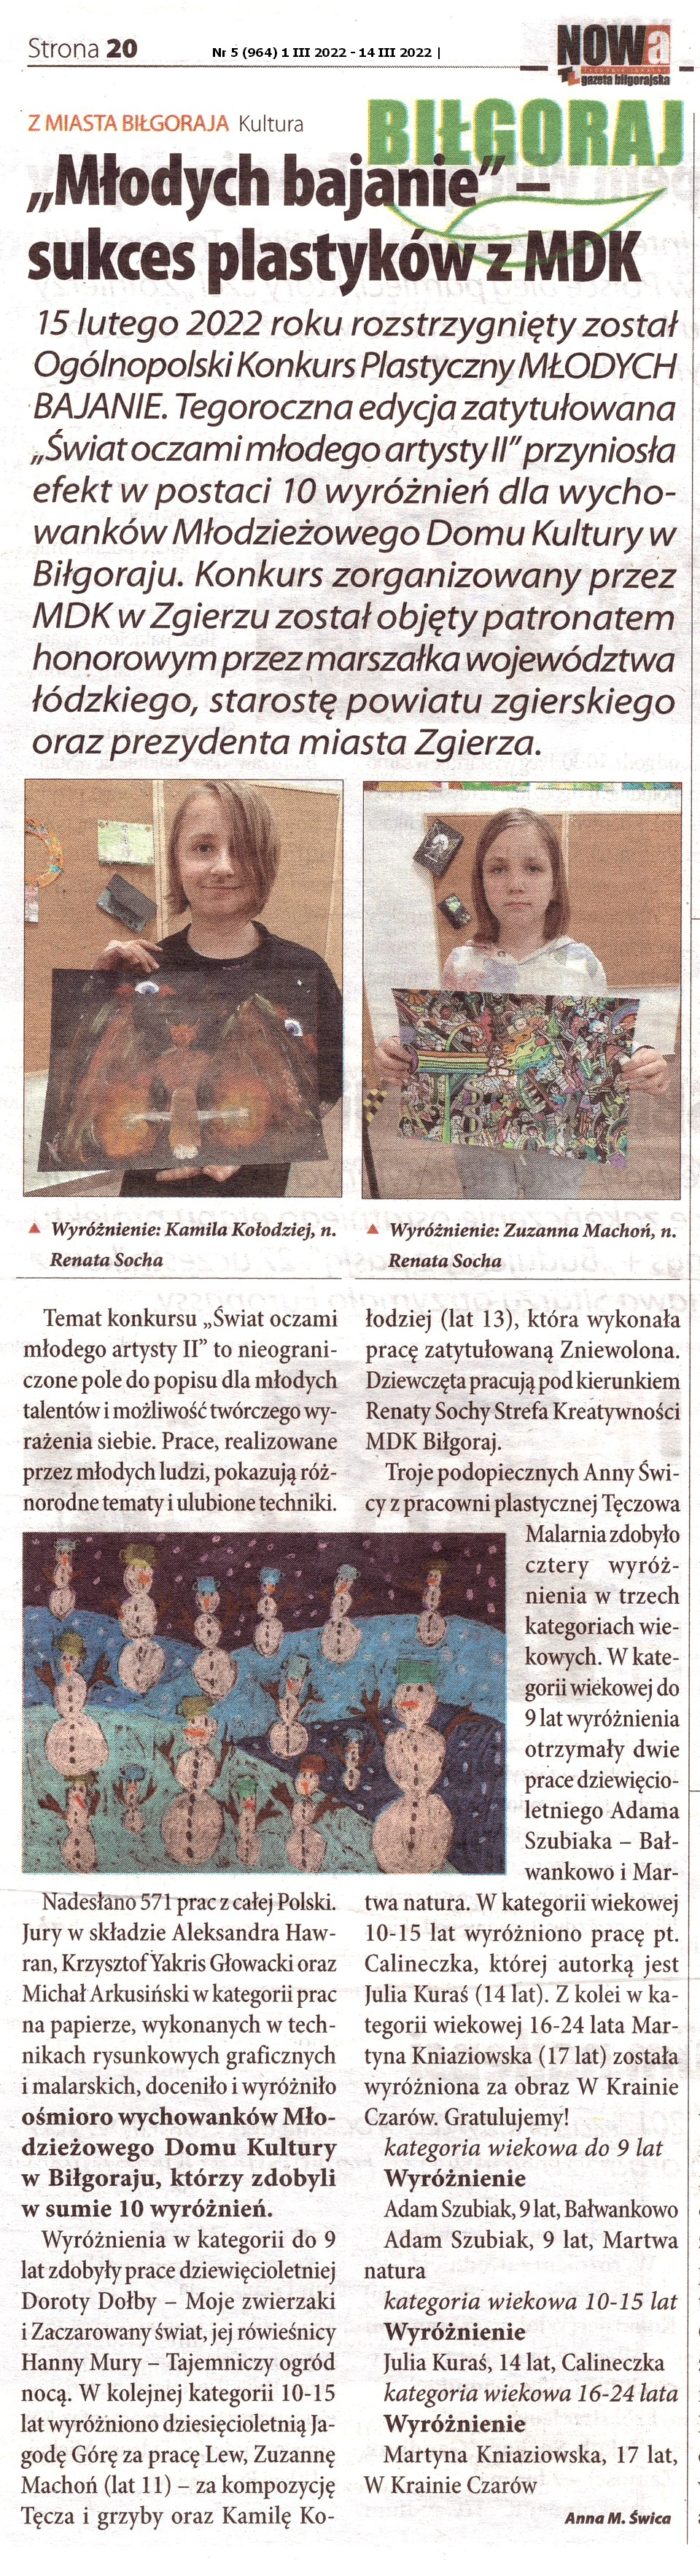 artykuł w gazecie NOWA Biłgorajska - zatytułowany Młodych bajanie - sukces plastyków z MDK